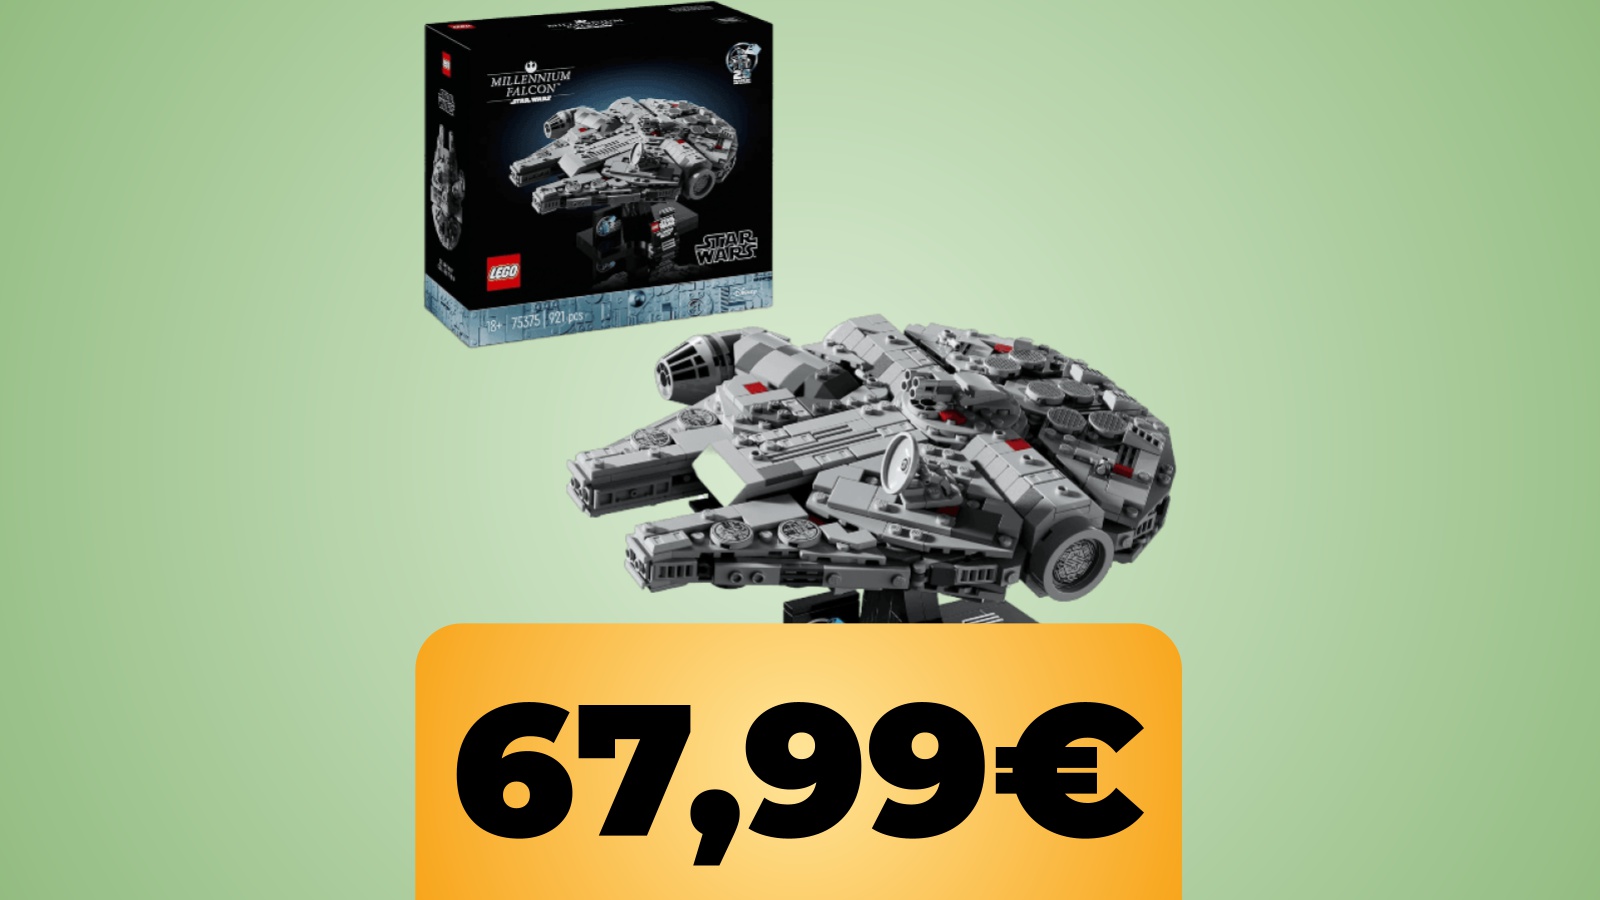 Il set LEGO Star Wars Millennium Falcon è in sconto su Amazon Italia al minimo storico